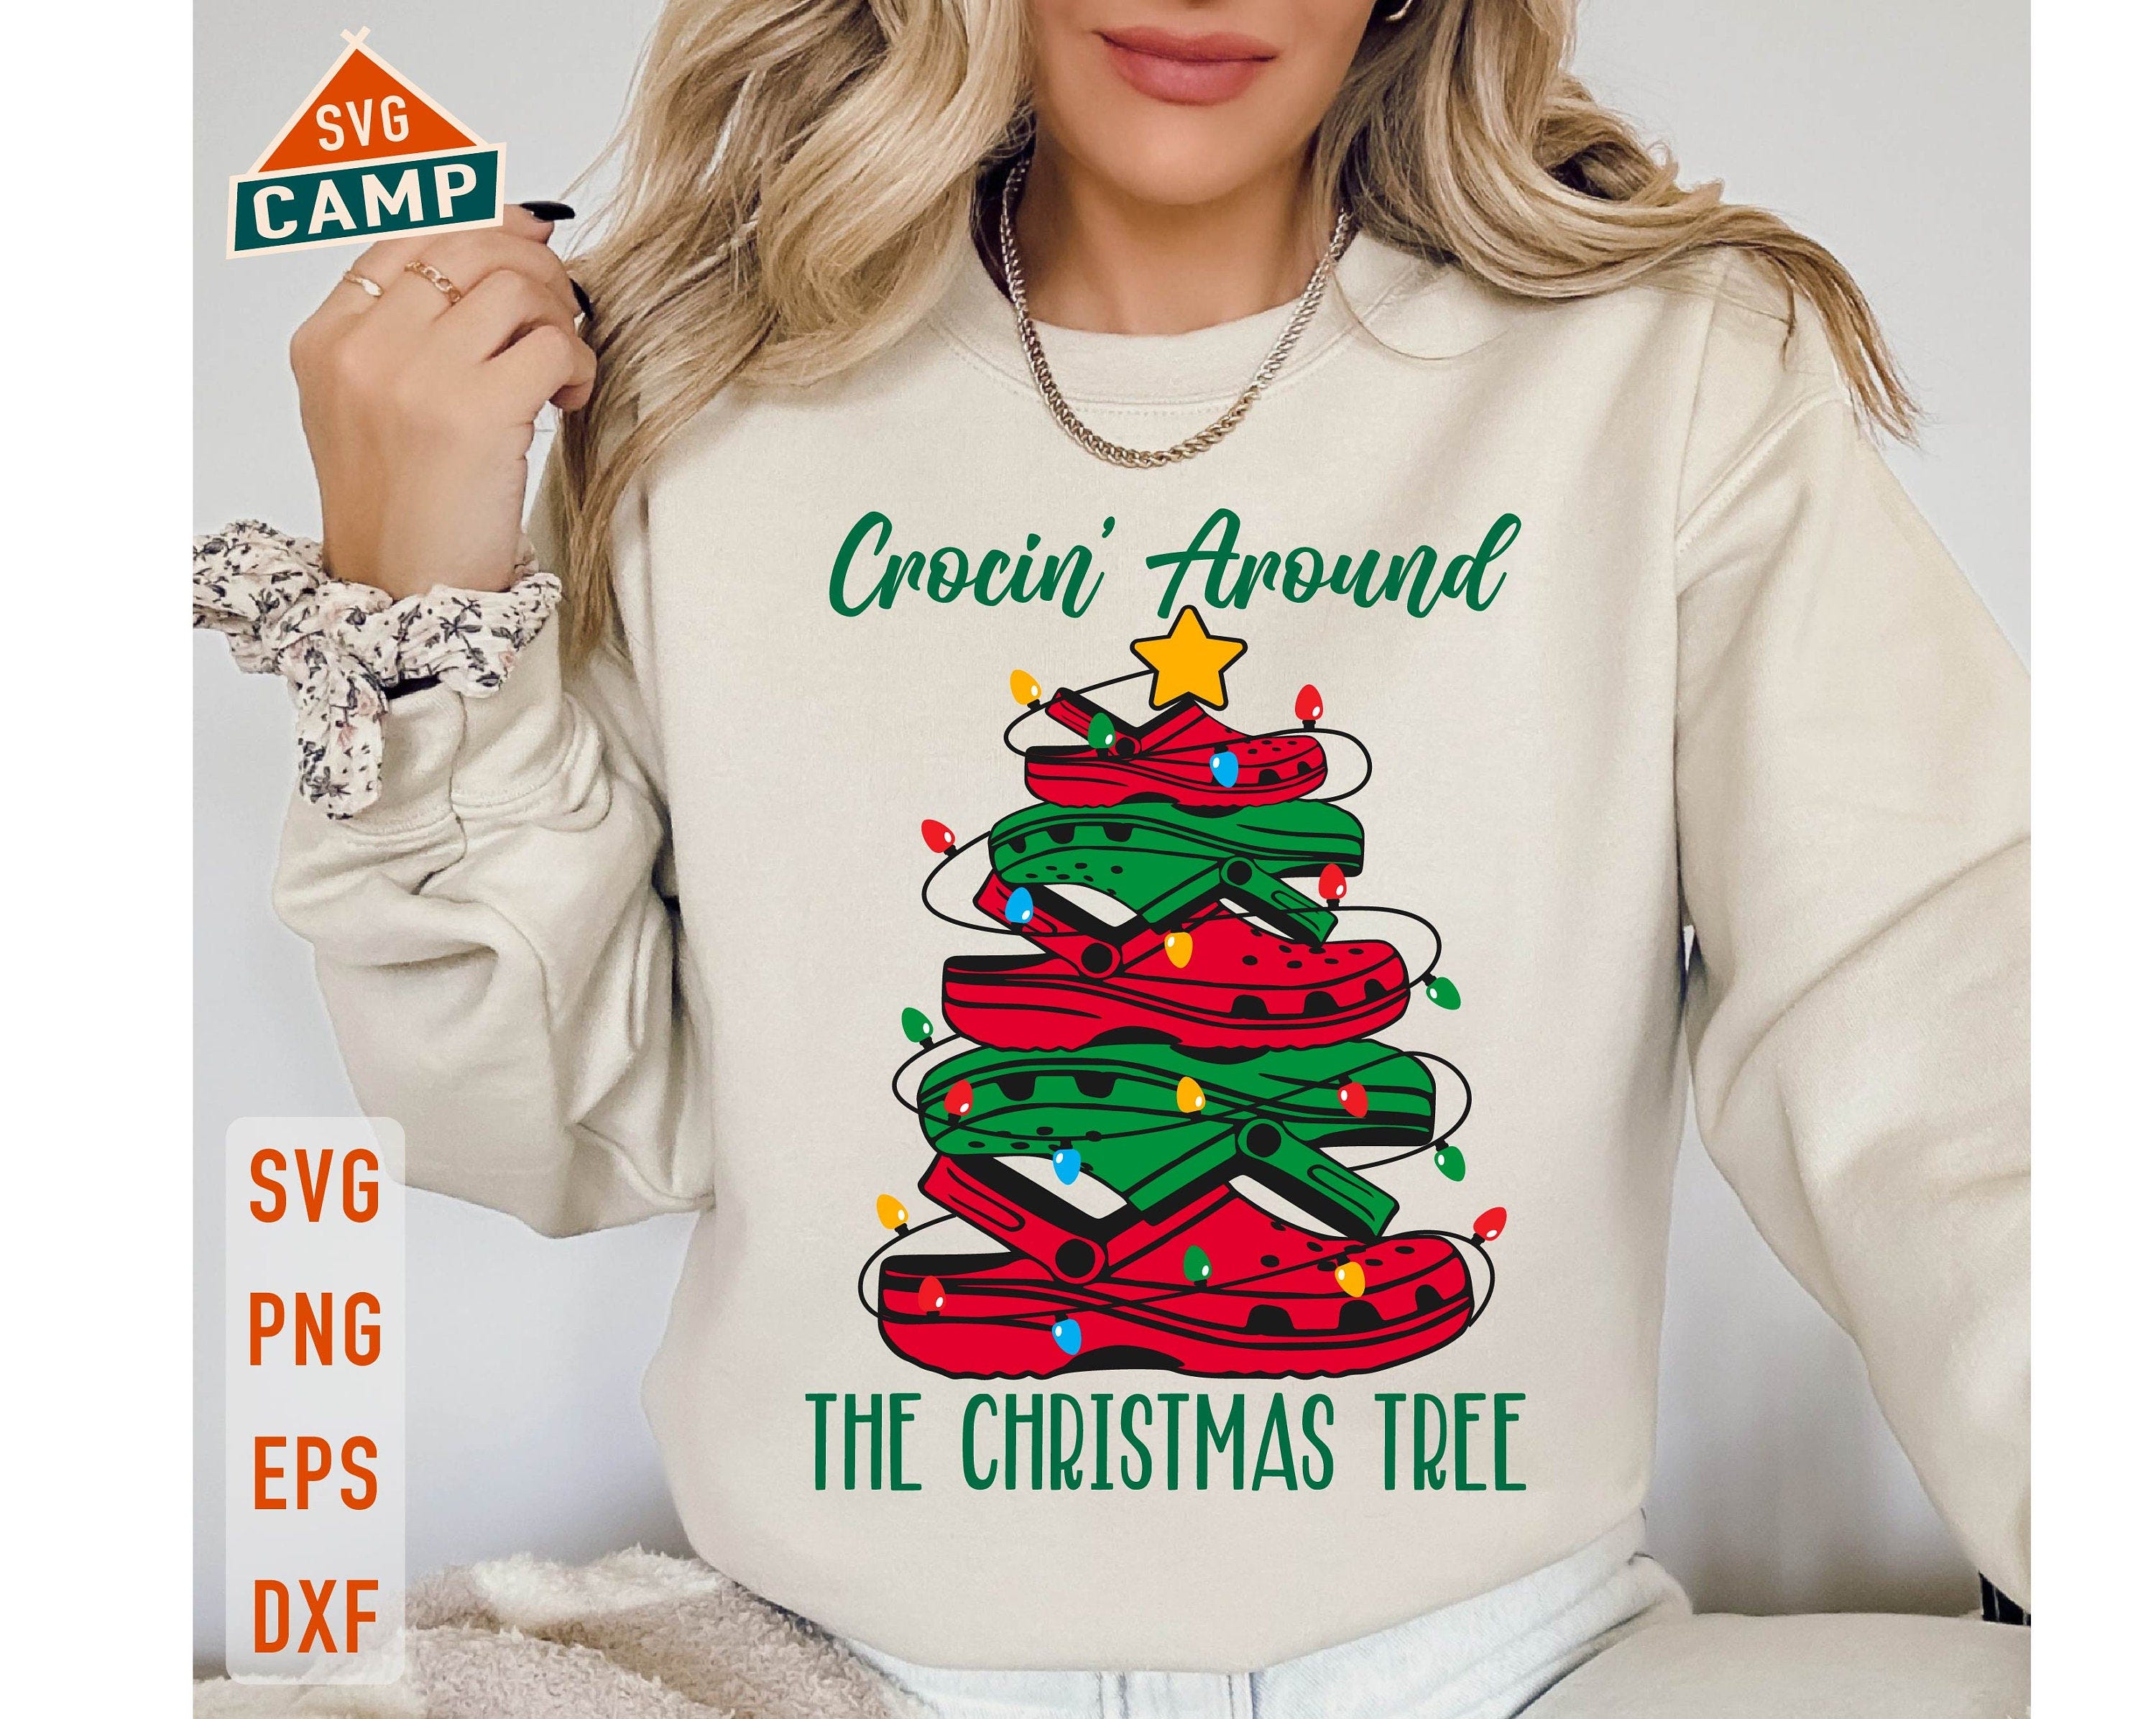 Crocin Around The Christmas Tree Svg, Funny Christmas Svg, Clog shoes Svg, Christmas Tree Svg, Funny Holiday Shirt, Christmas Shirt Svg